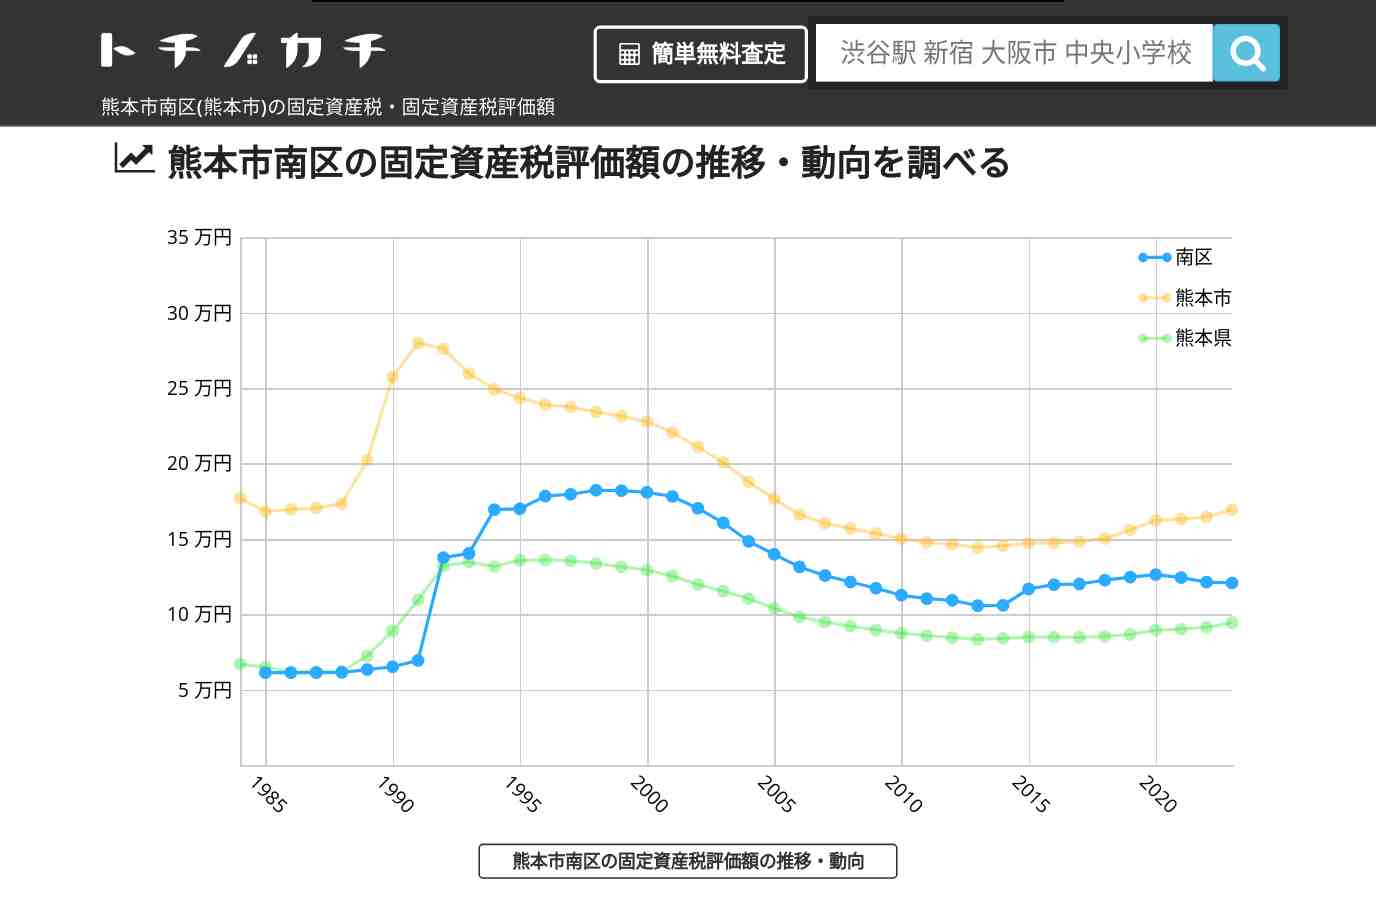 富合小学校(熊本県 熊本市 南区)周辺の固定資産税・固定資産税評価額 | トチノカチ